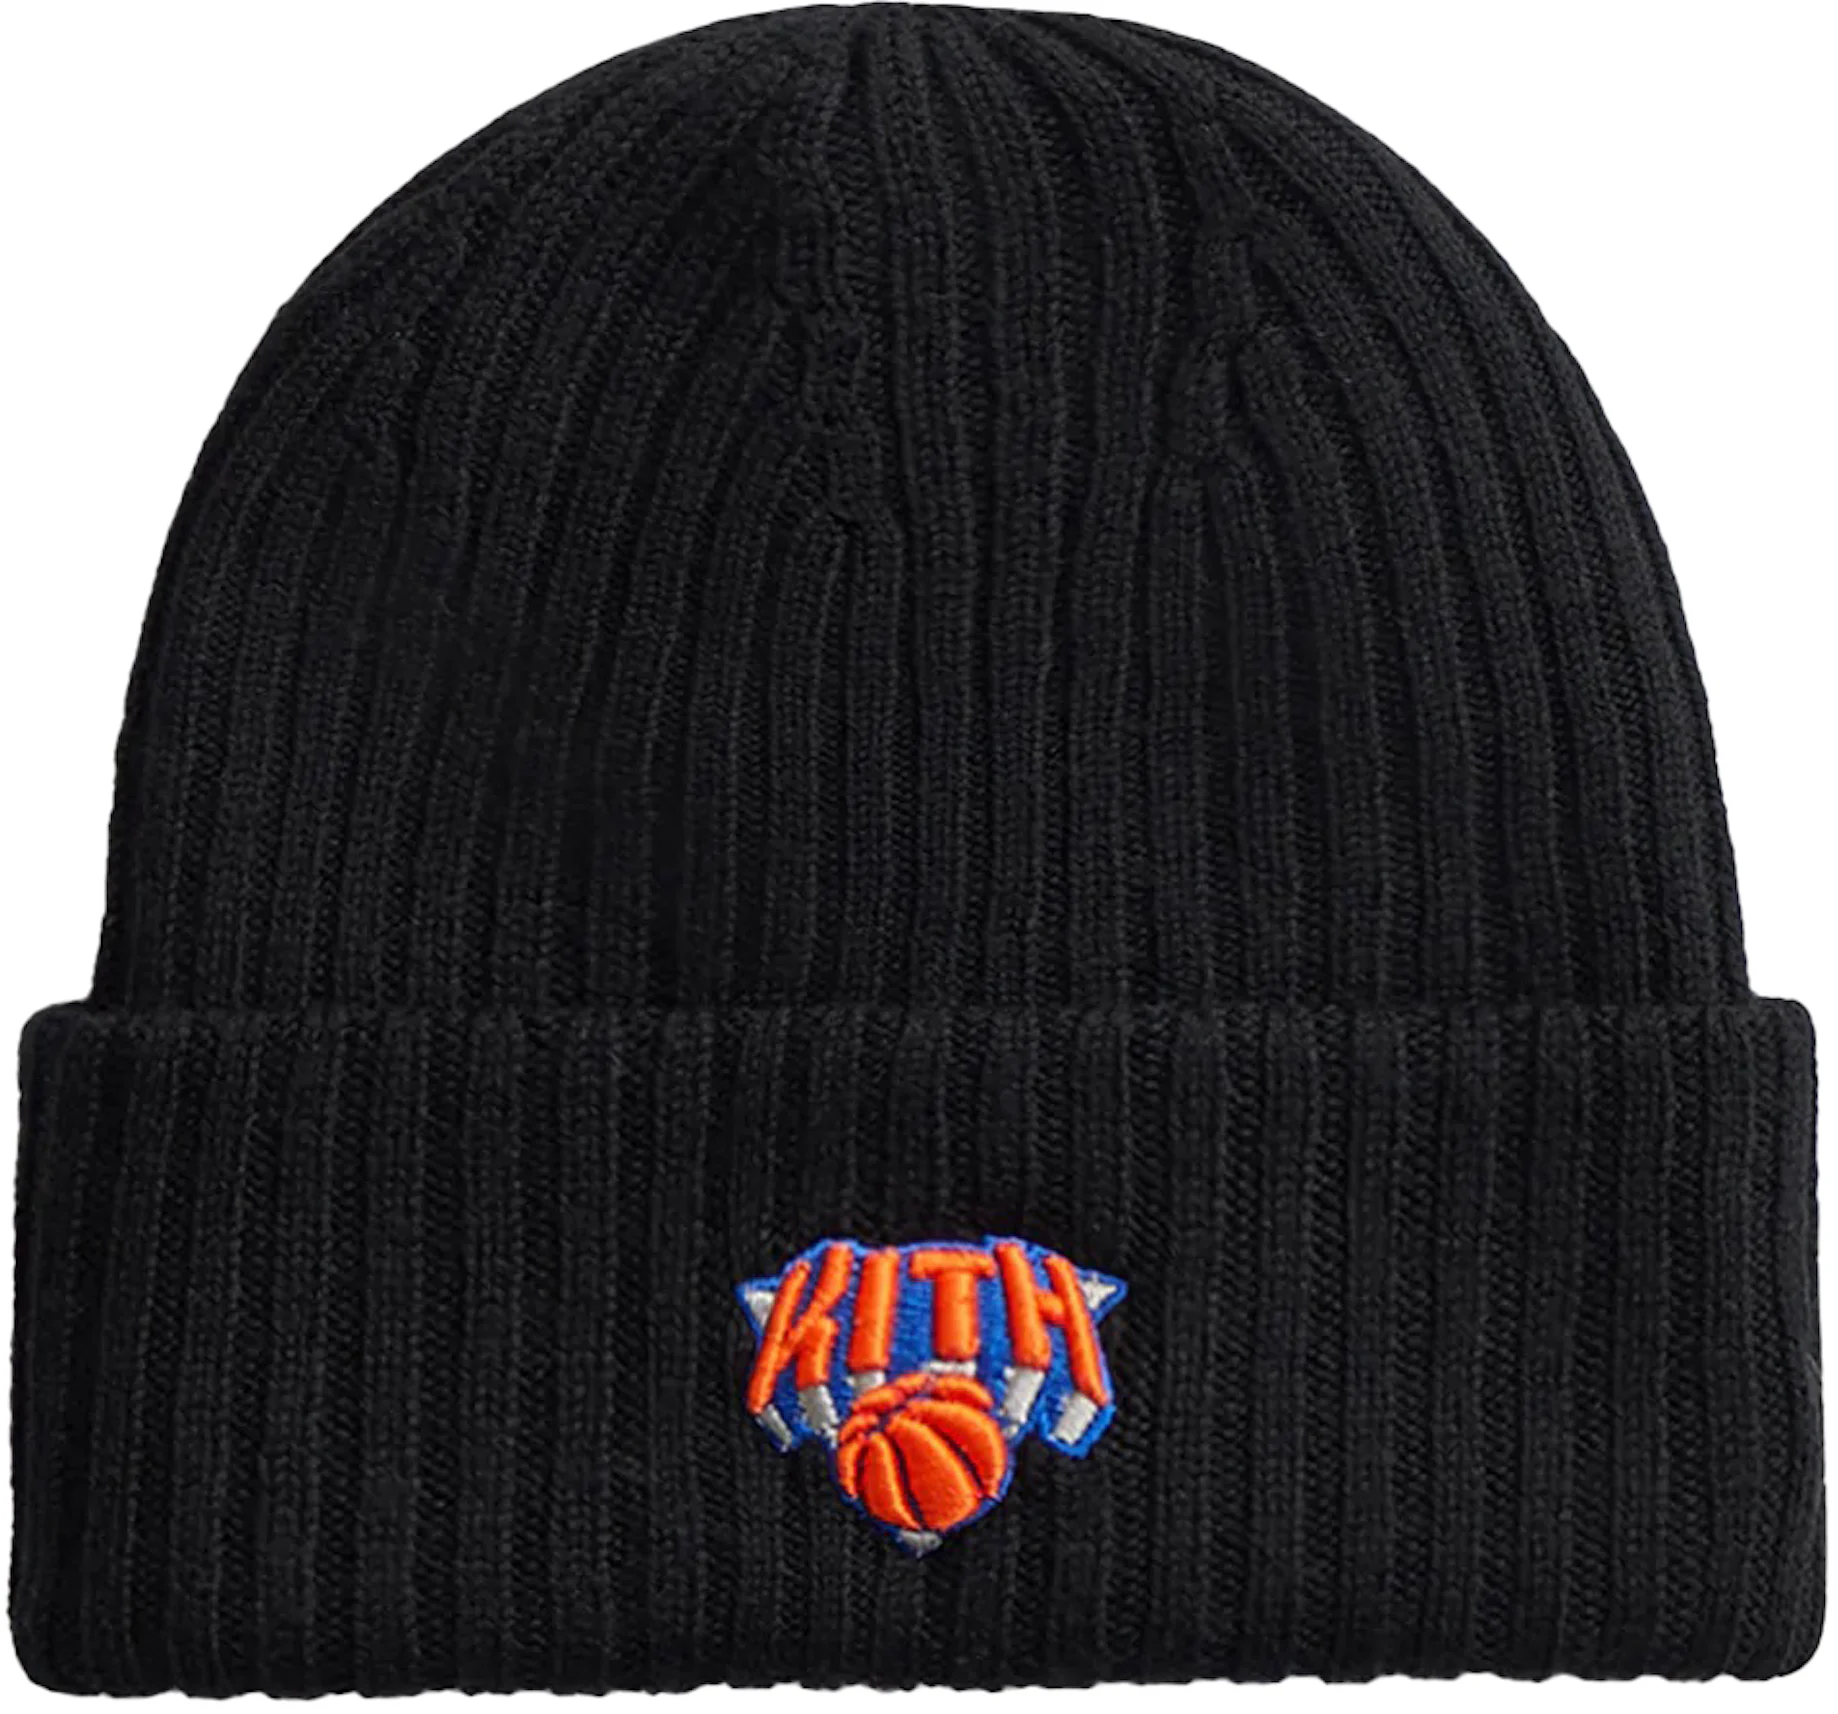 Kith New York Knicks II Hoodie Black Men's - FW22 - US